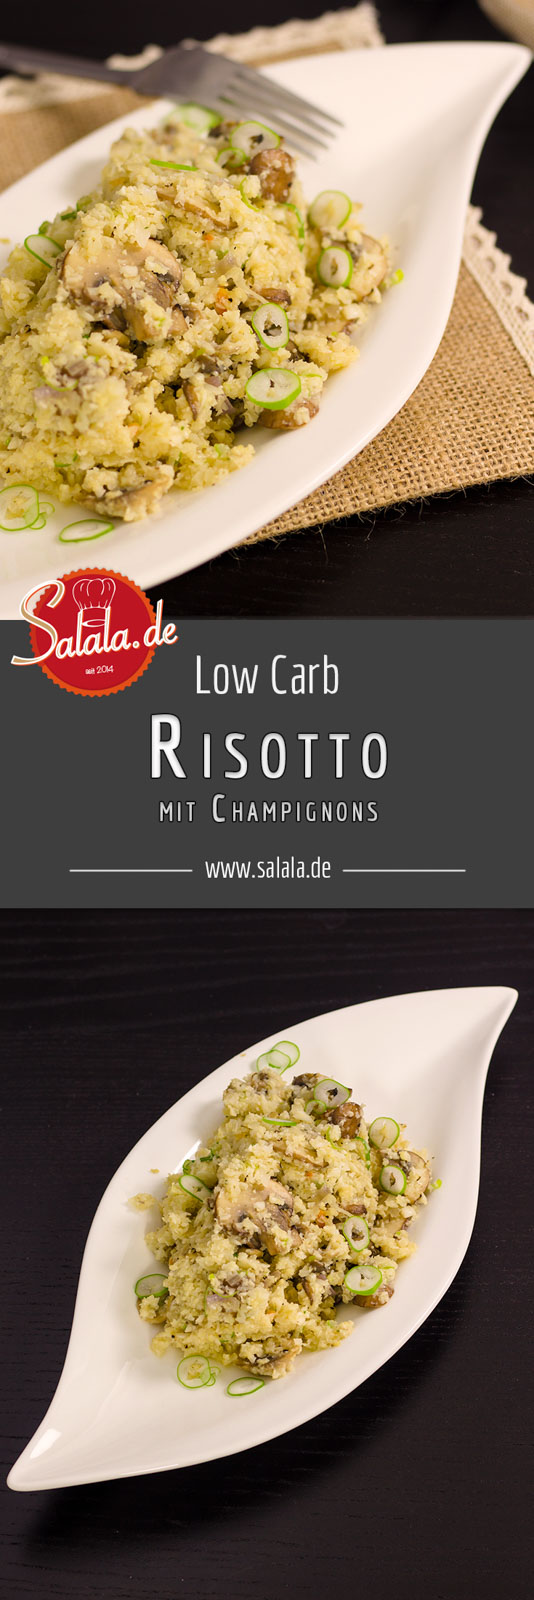 Low Carb Risotto mit Champignons und Blumenkohlreis - by salala.de - vegetarisch ballaststoffreich Risotto Low Carb Reis glutenfrei ohne Mehl Rezept selber machen